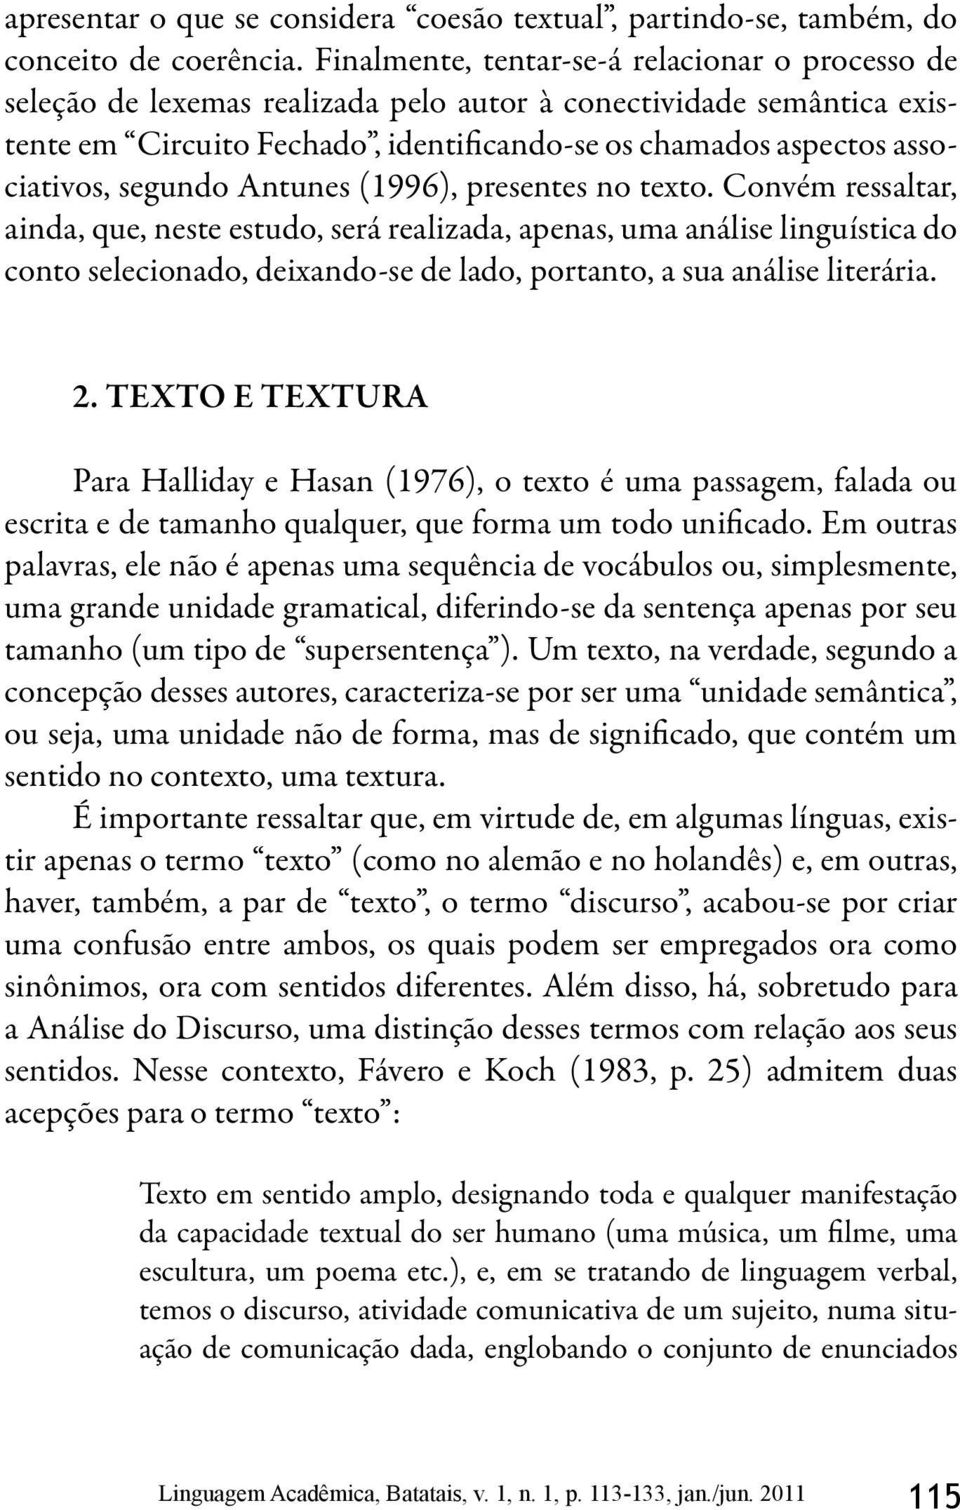 segundo Antunes (1996), presentes no texto.